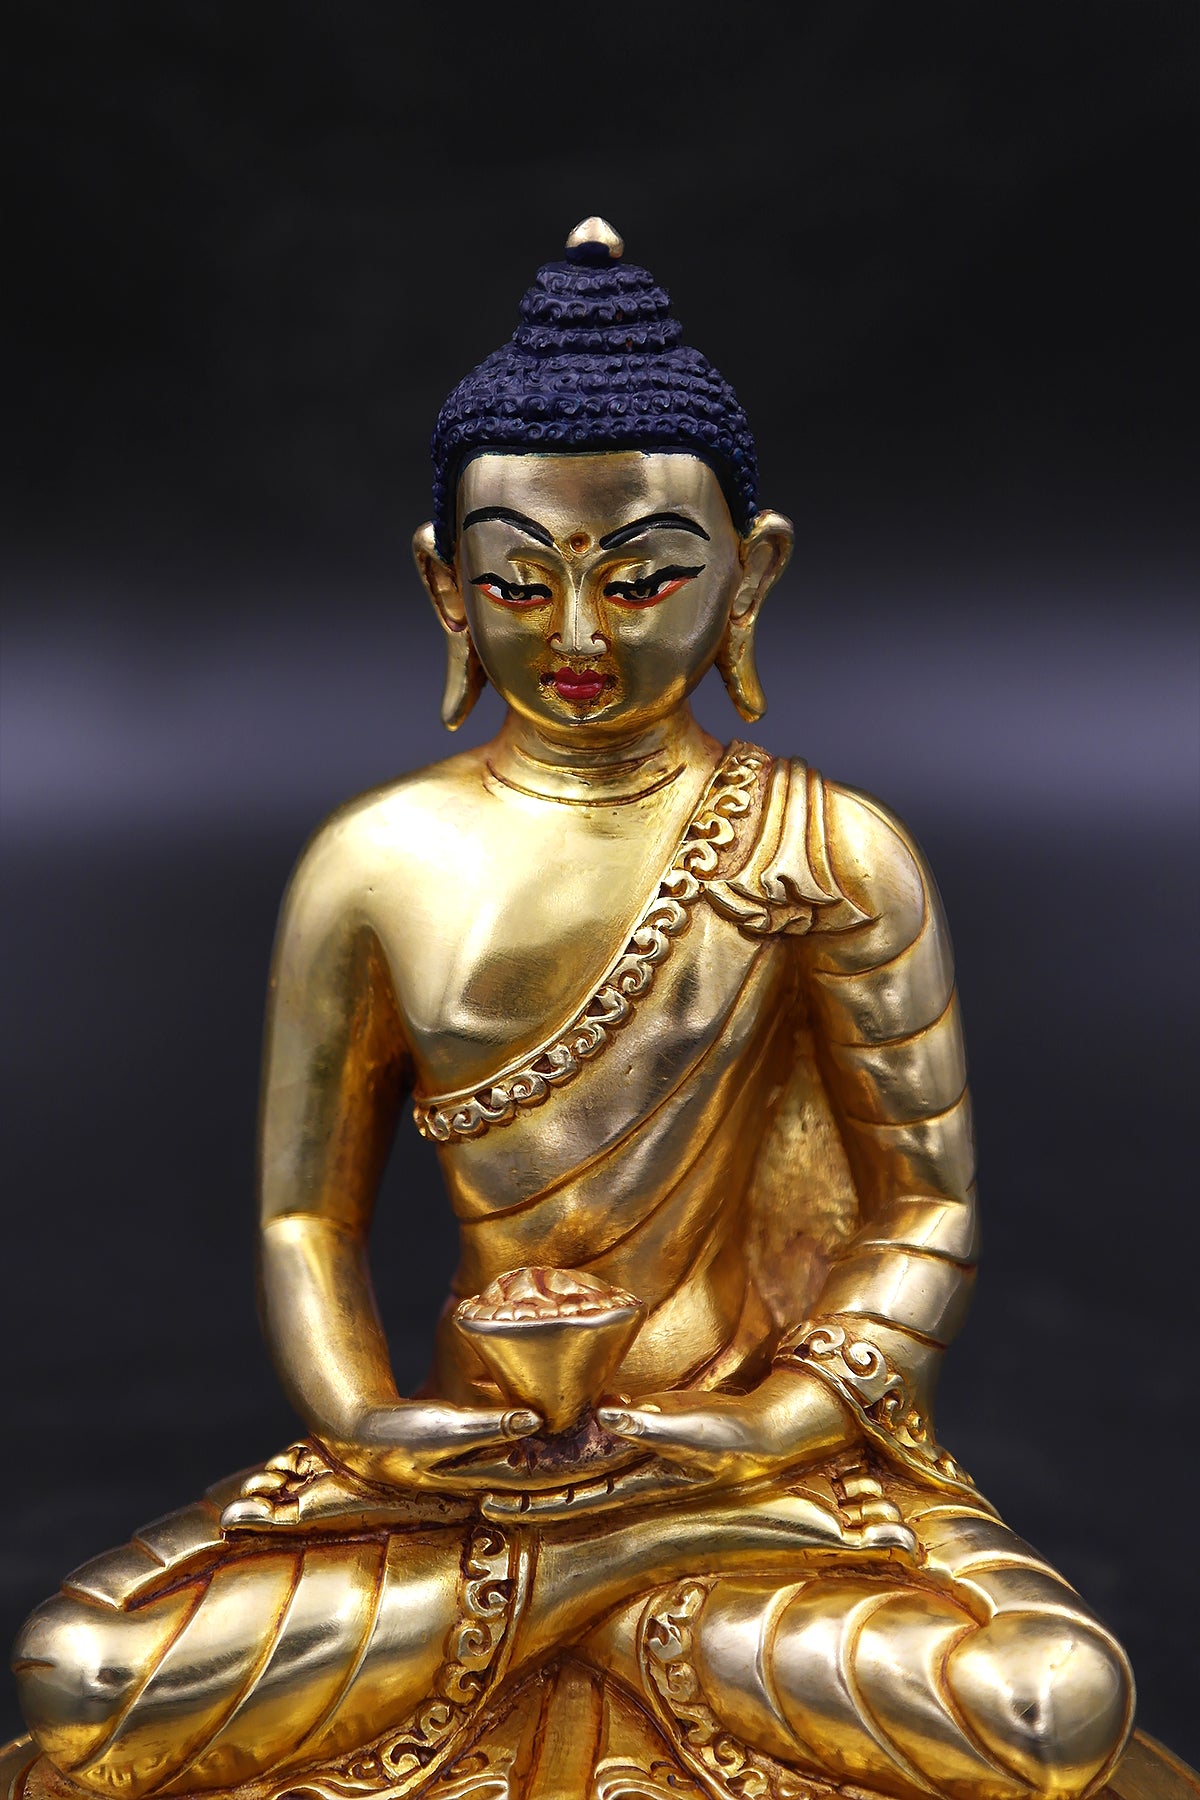 Handmade Amitabha Buddha Statue 6"